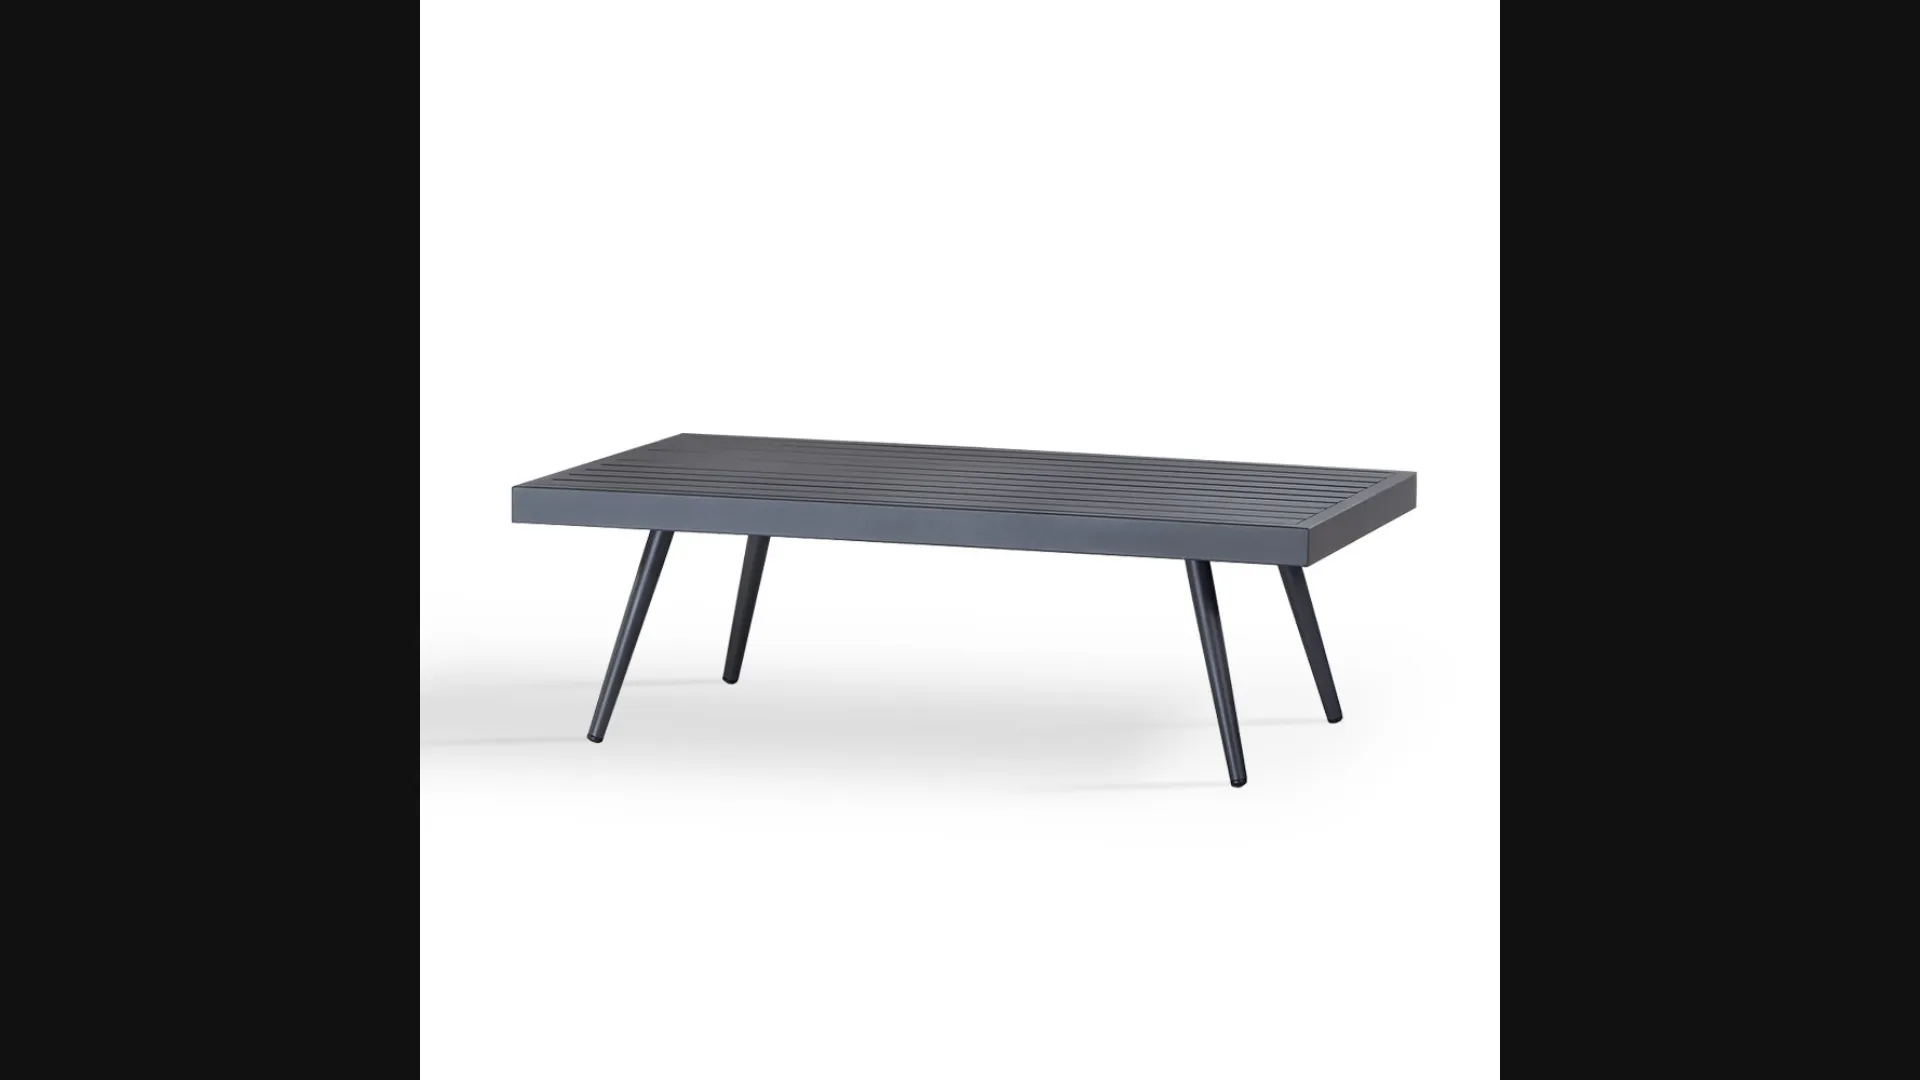 Tavolino Nice in alluminio verniciato antracite di La Seggiola